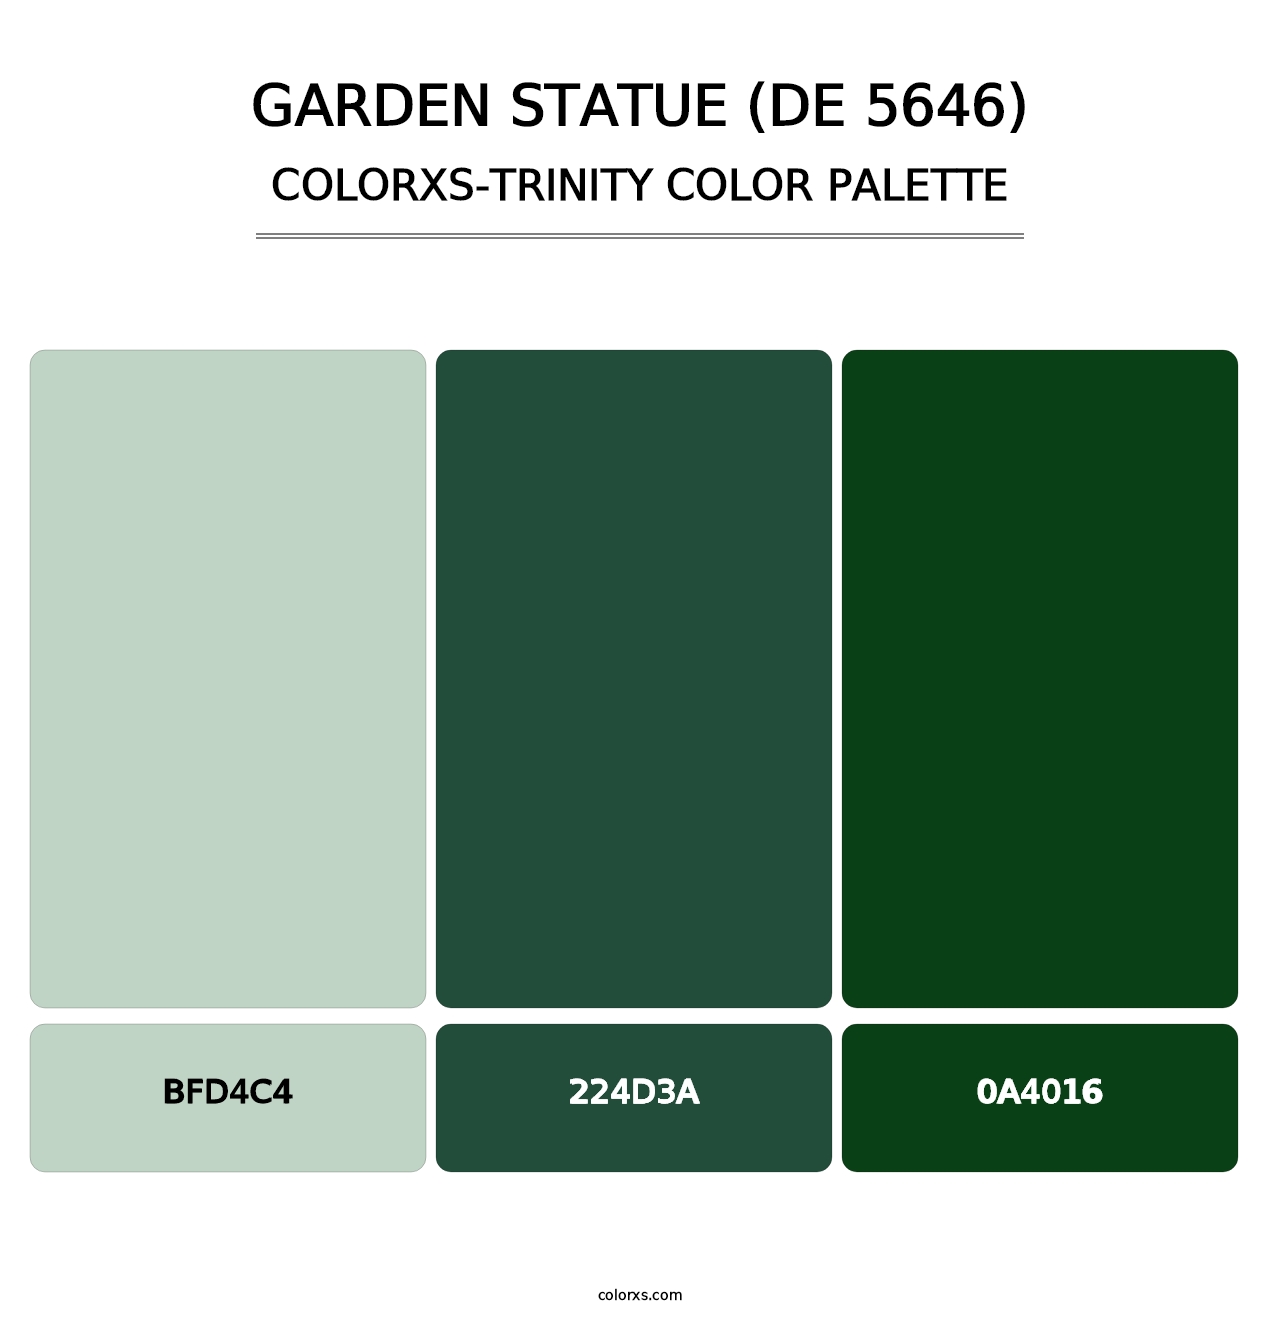 Garden Statue (DE 5646) - Colorxs Trinity Palette